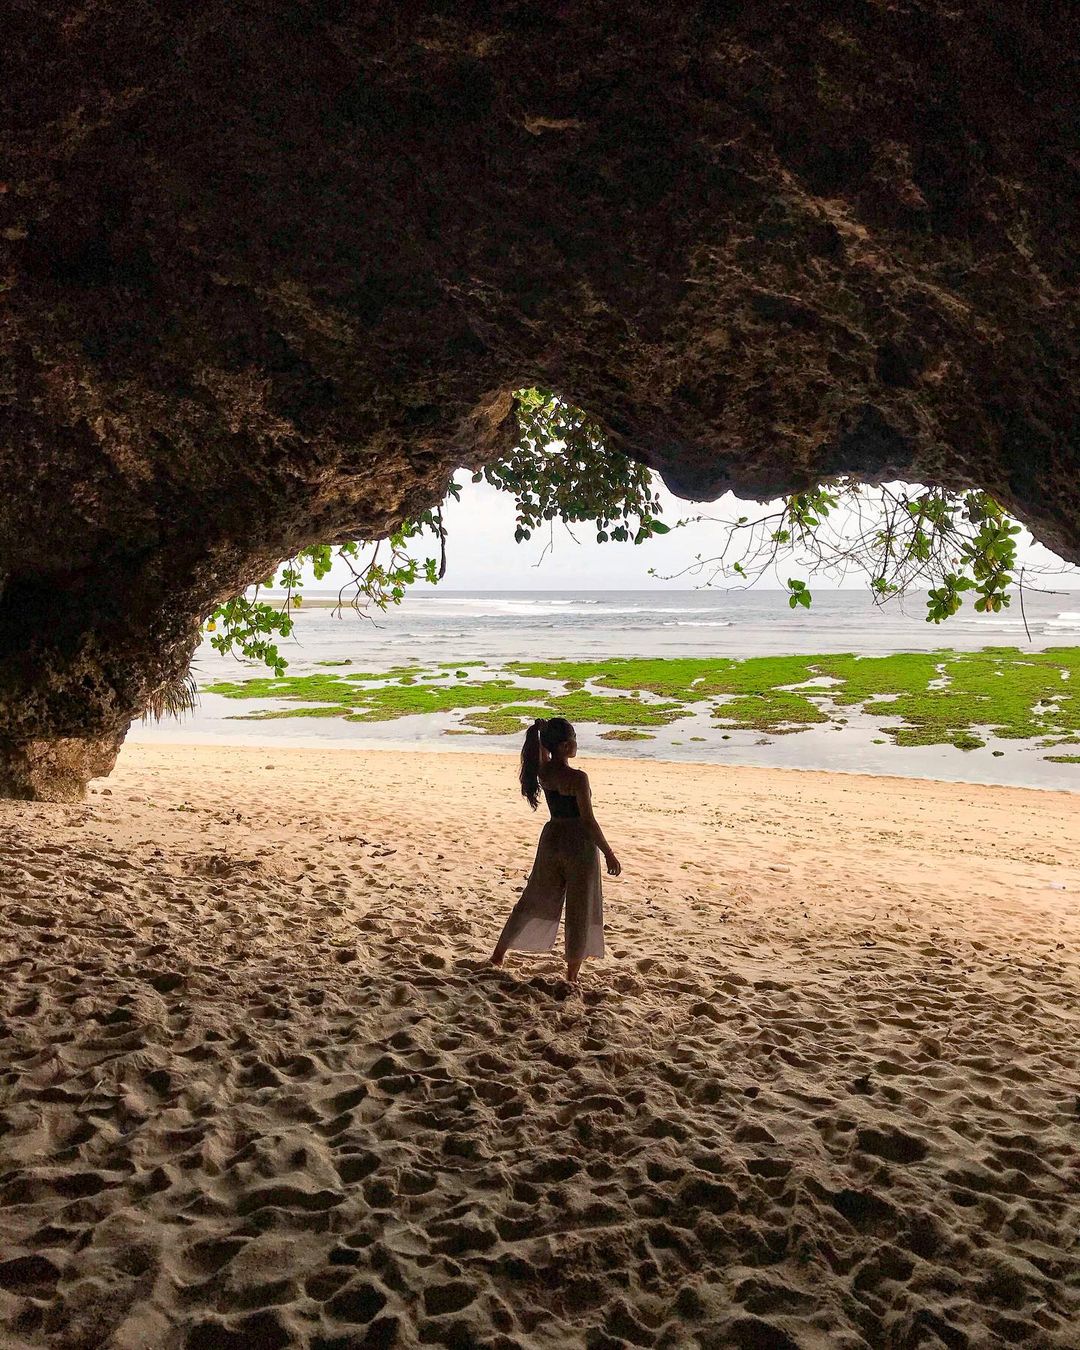 hidden beaches in bali - green bowl beach caves